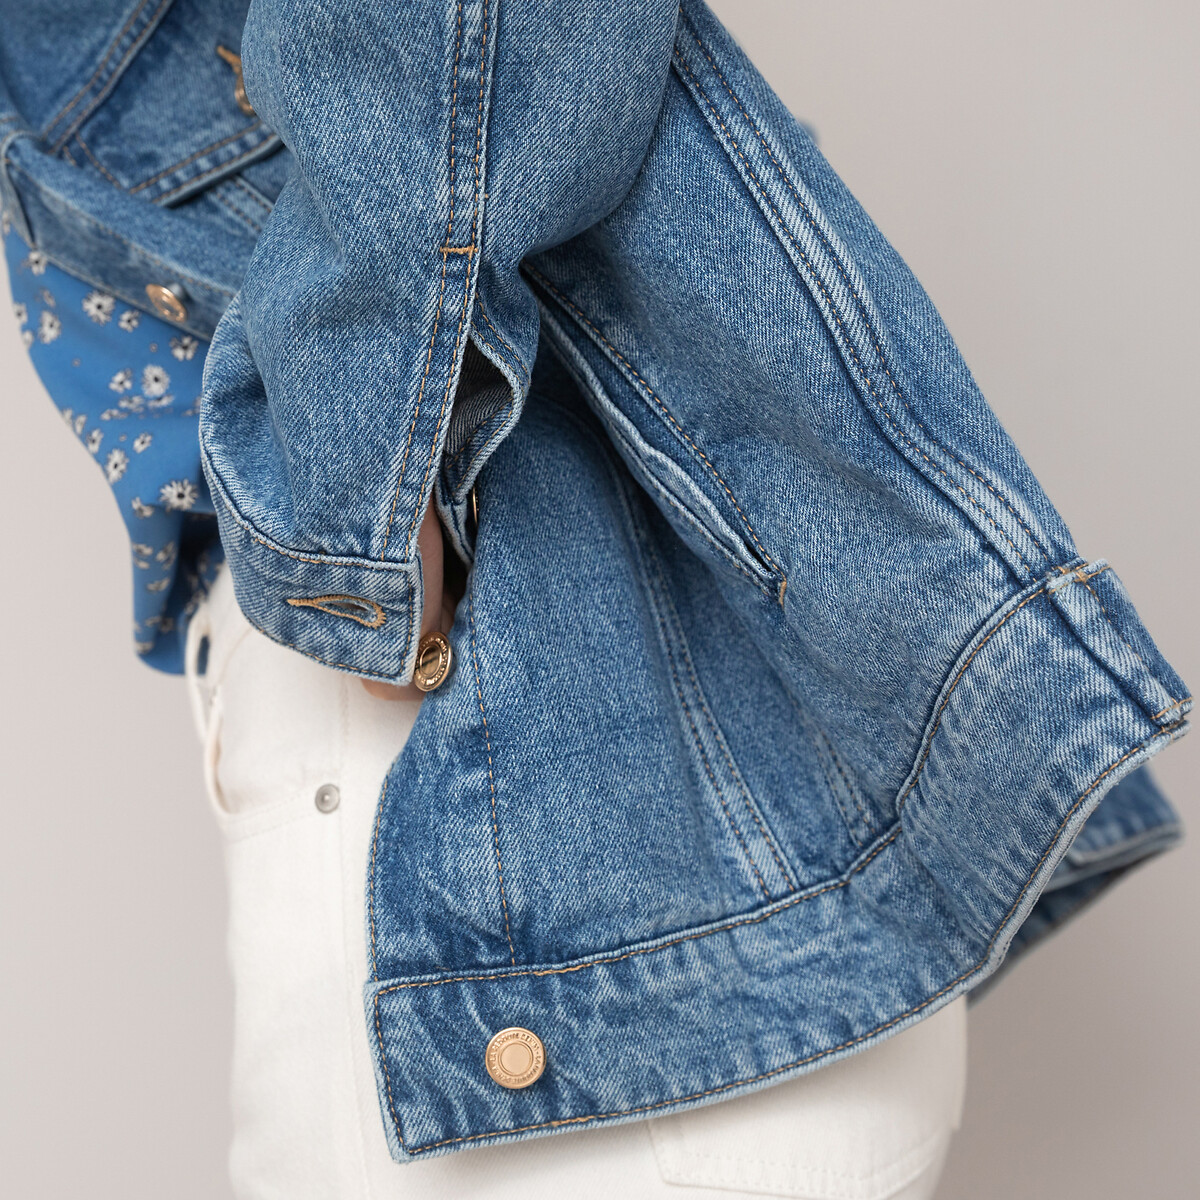 Куртка Из джинсовой ткани широкого покроя 36 (FR) - 42 (RUS) синий LaRedoute, размер 36 (FR) - 42 (RUS) Куртка Из джинсовой ткани широкого покроя 36 (FR) - 42 (RUS) синий - фото 3